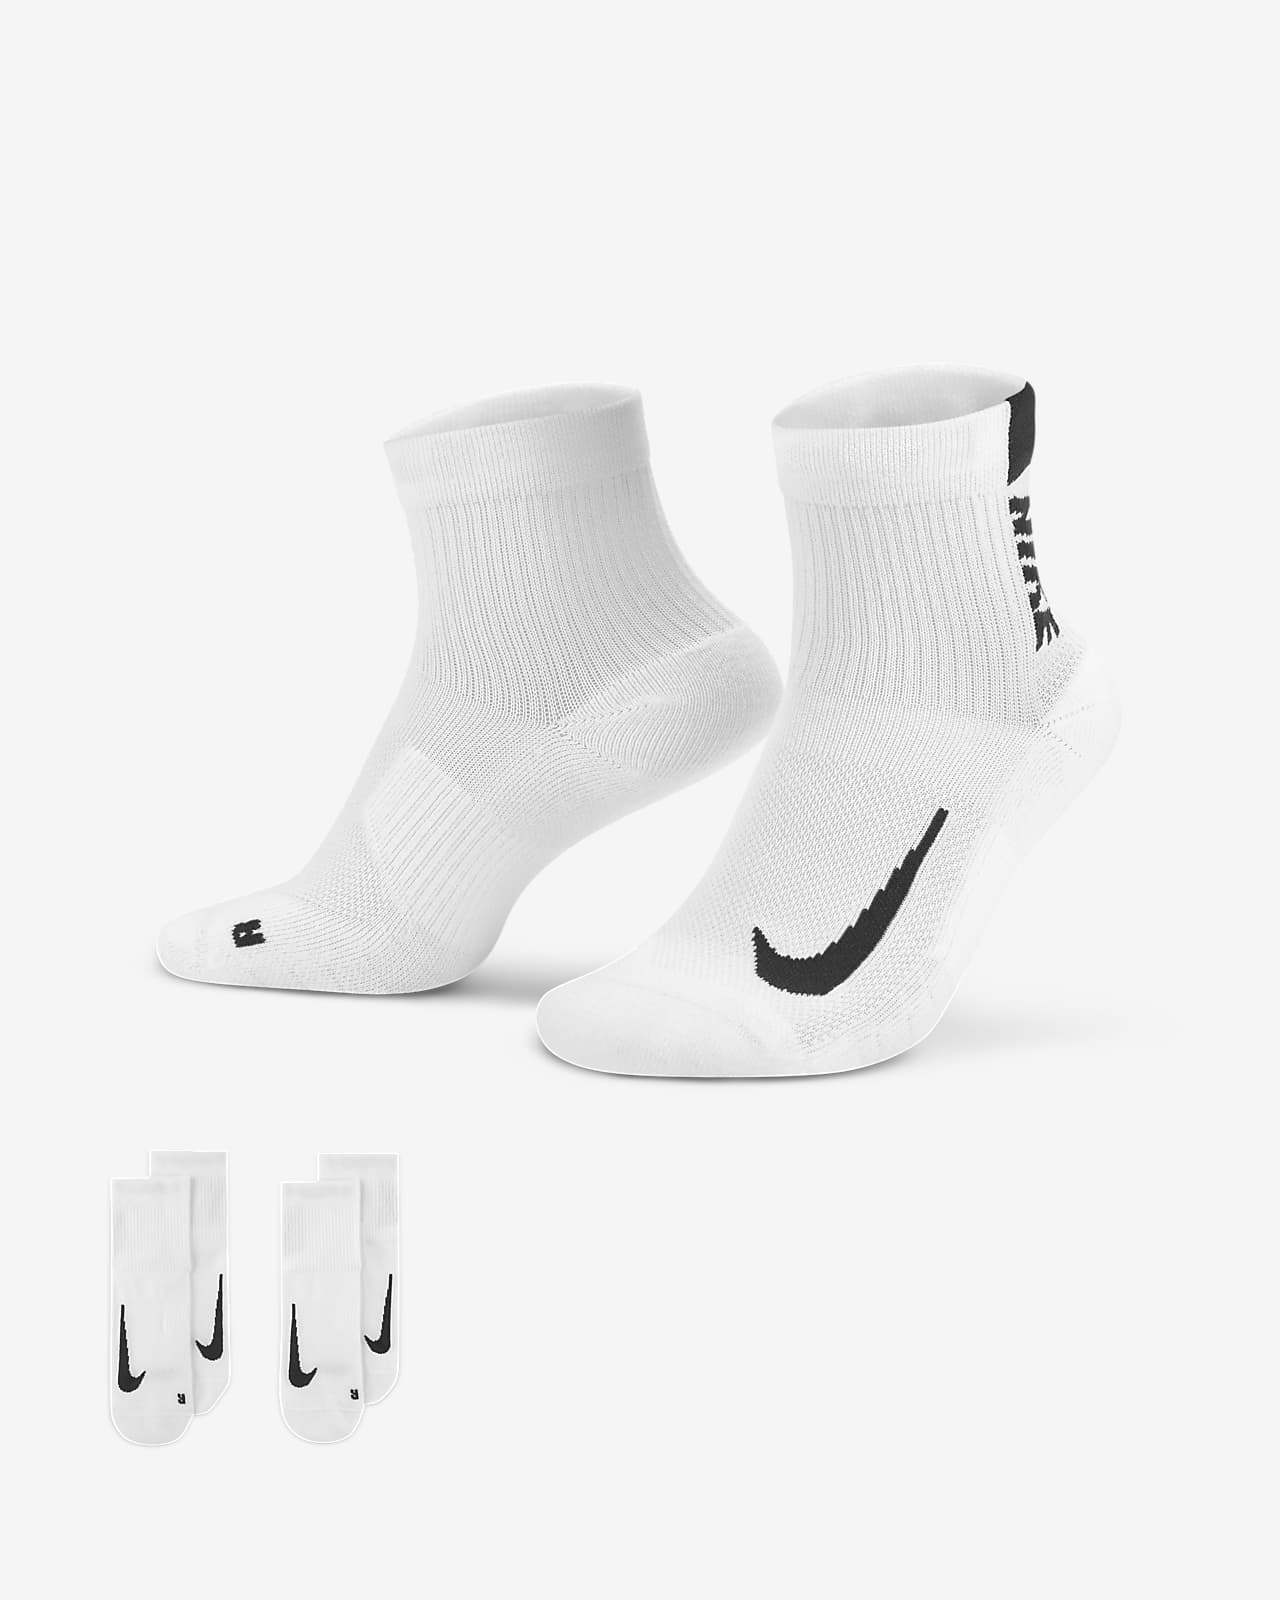 Nike Multiplier hardloopenkelsokken (2 paar)